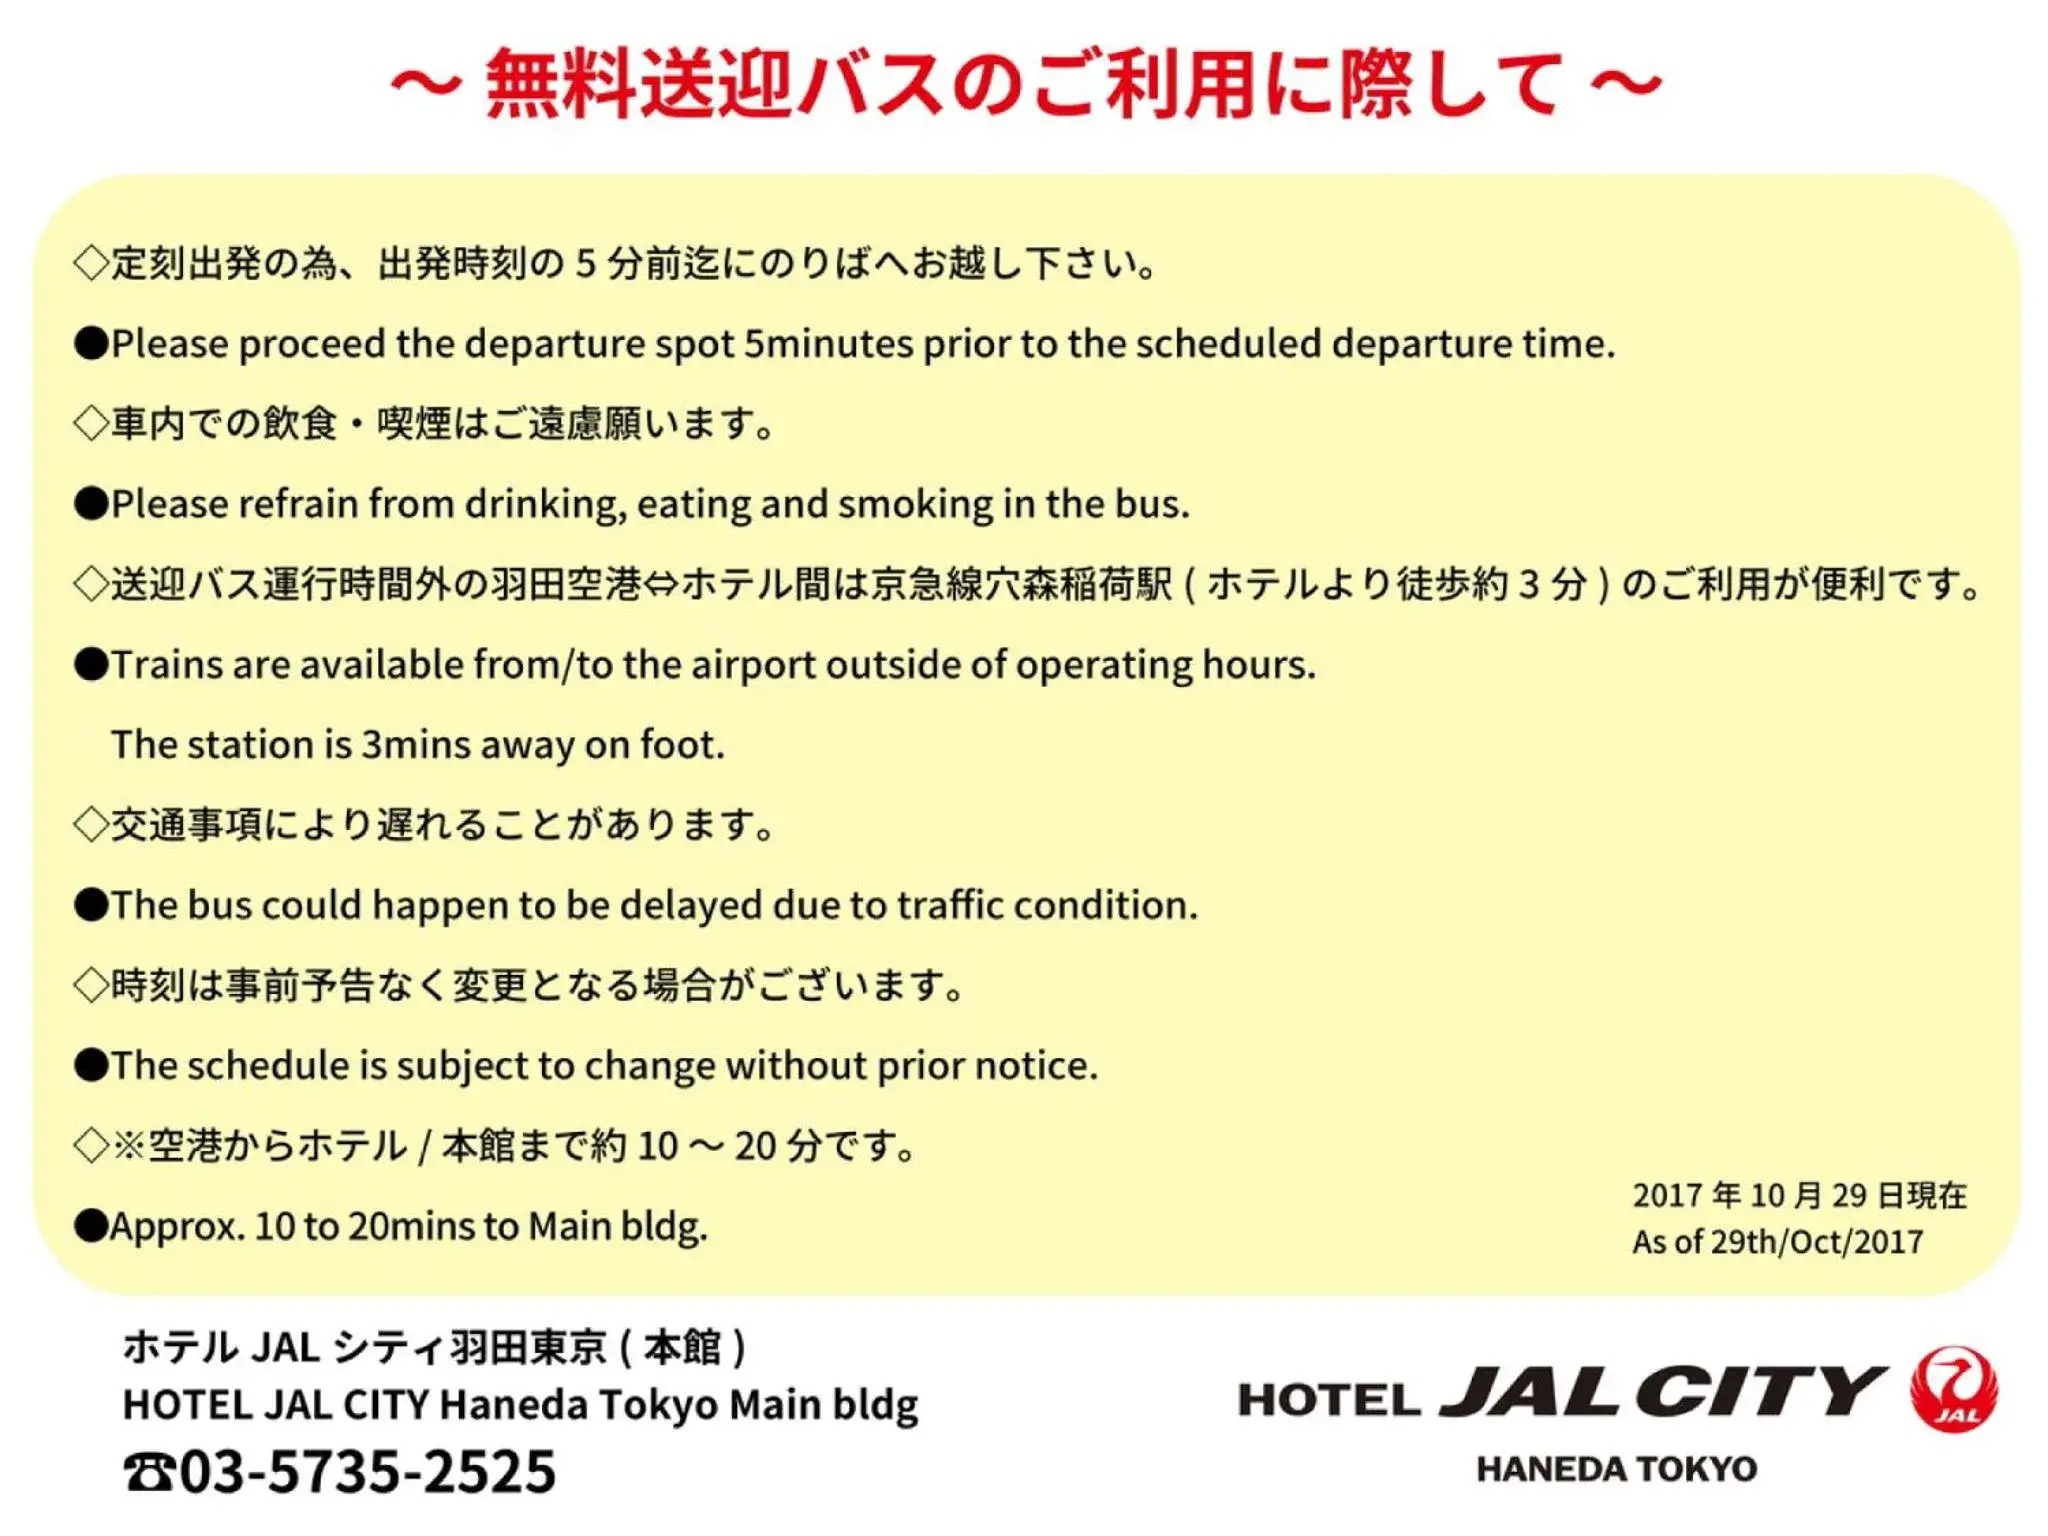 shuttle in Hotel JAL City Haneda Tokyo